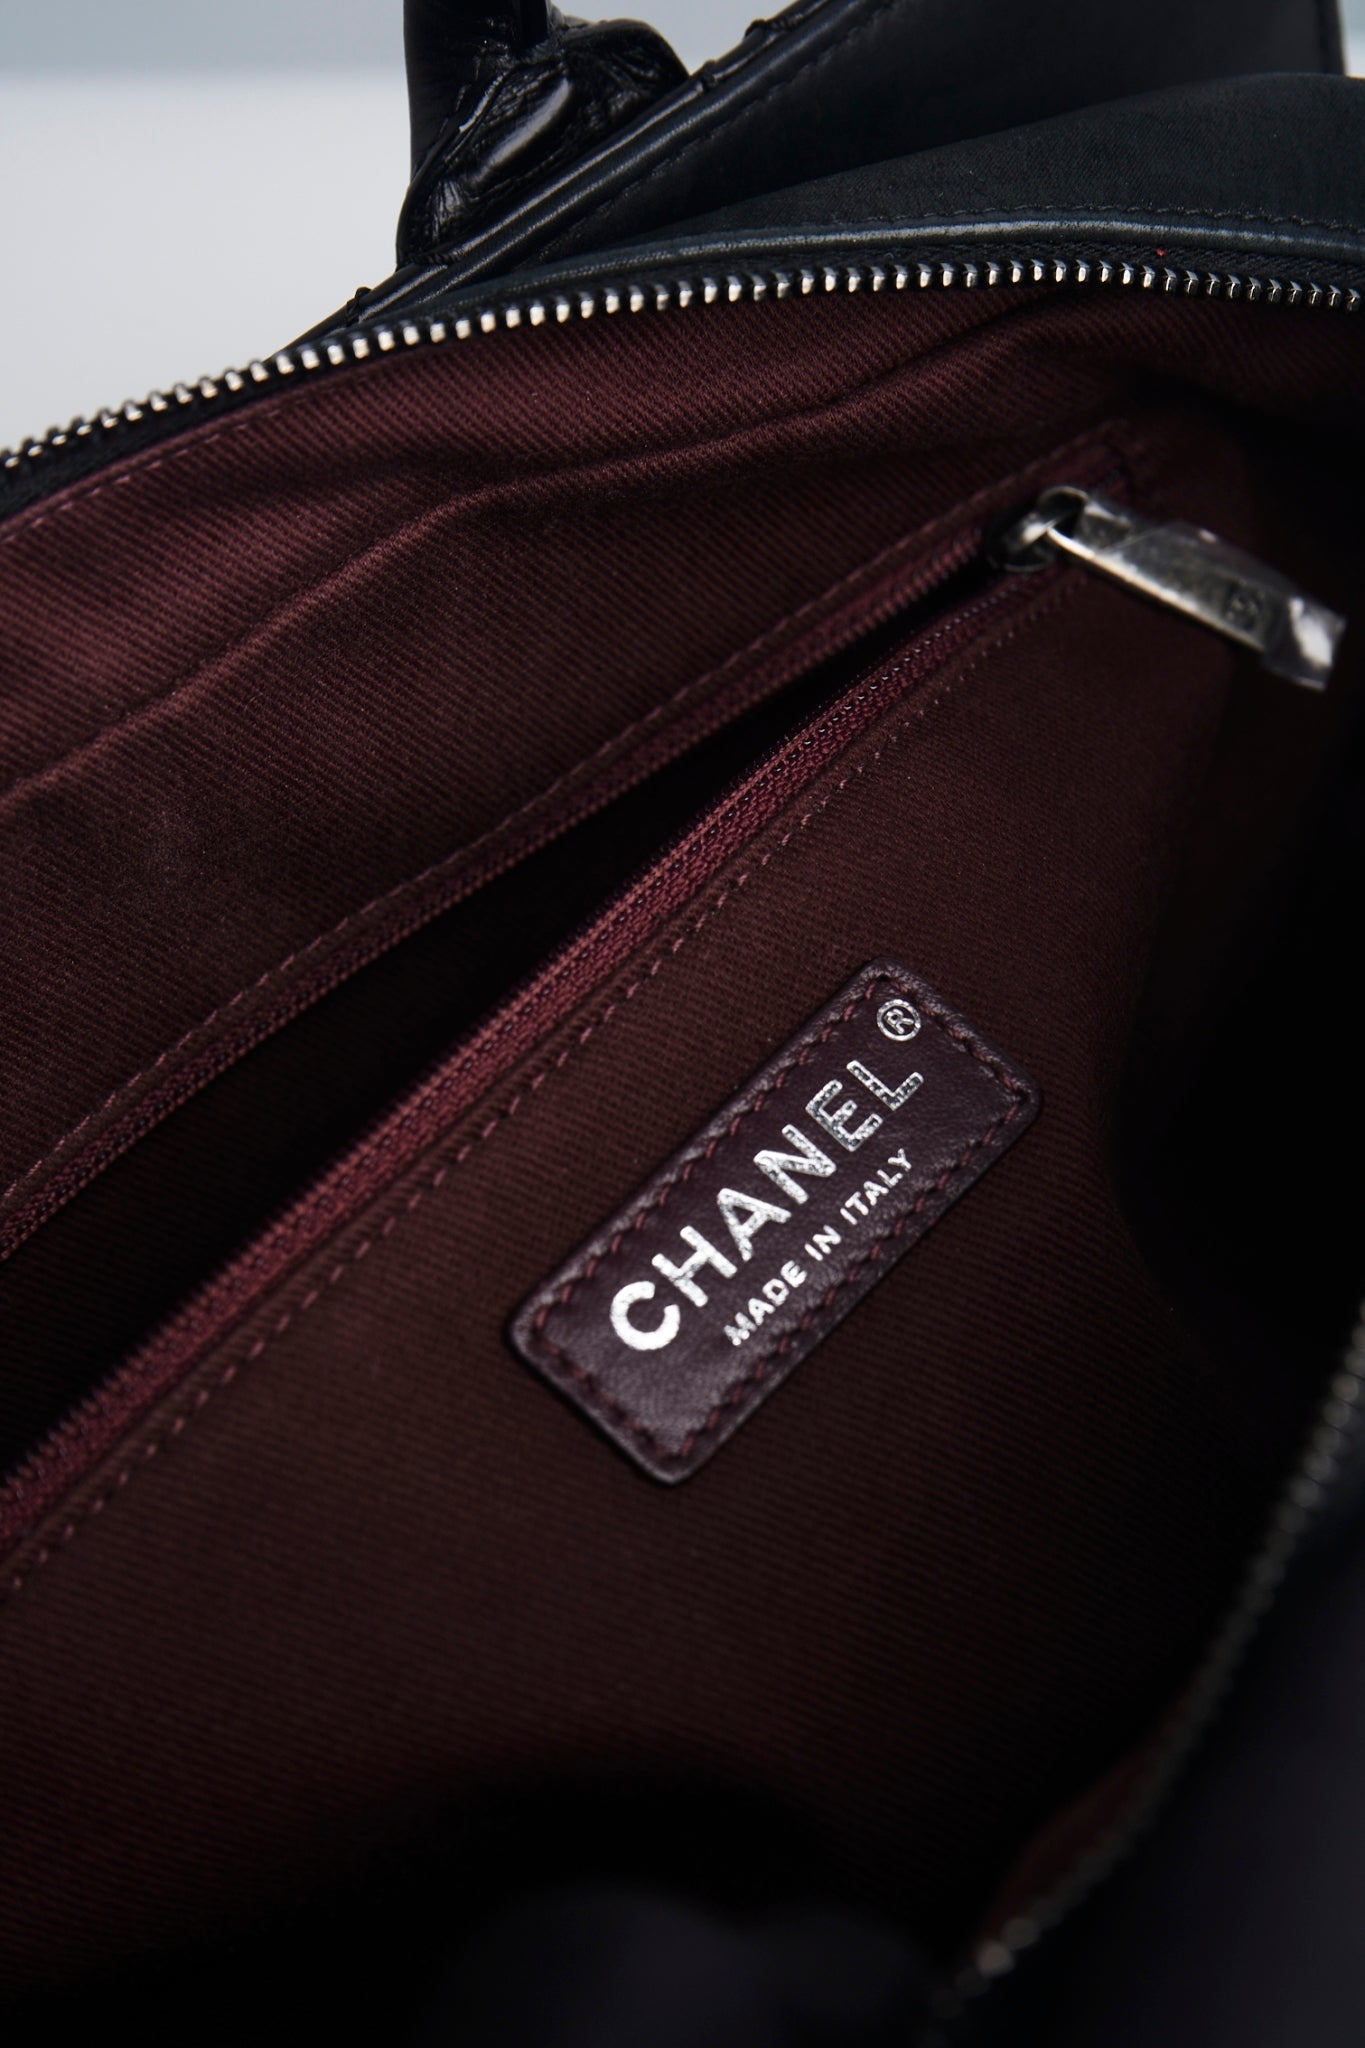 Chanel 31 rue cambon 2way bag